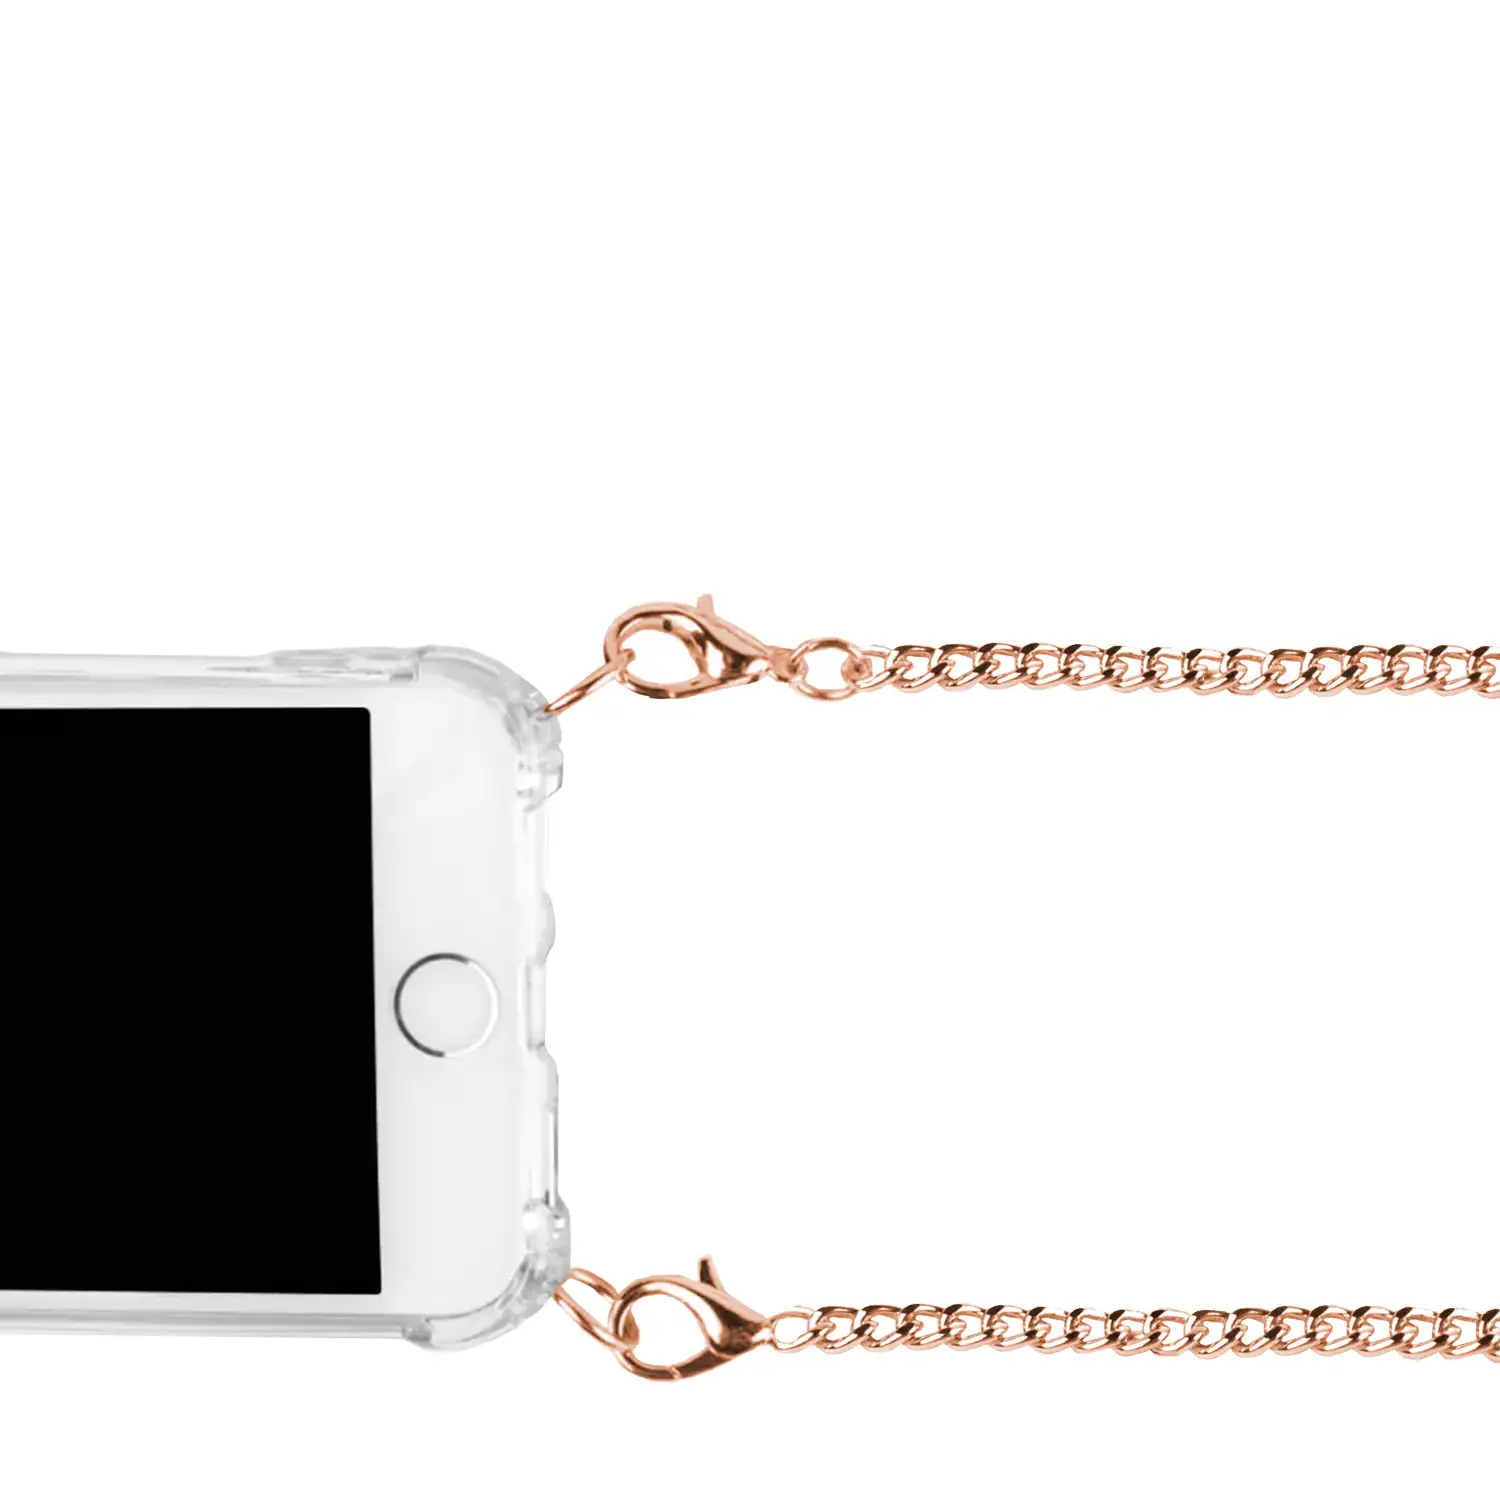 Carcasa transparente iPhone 11 Pro con colgante cadena metálica. Accesorio de moda, ajuste perfecto y máxima protección